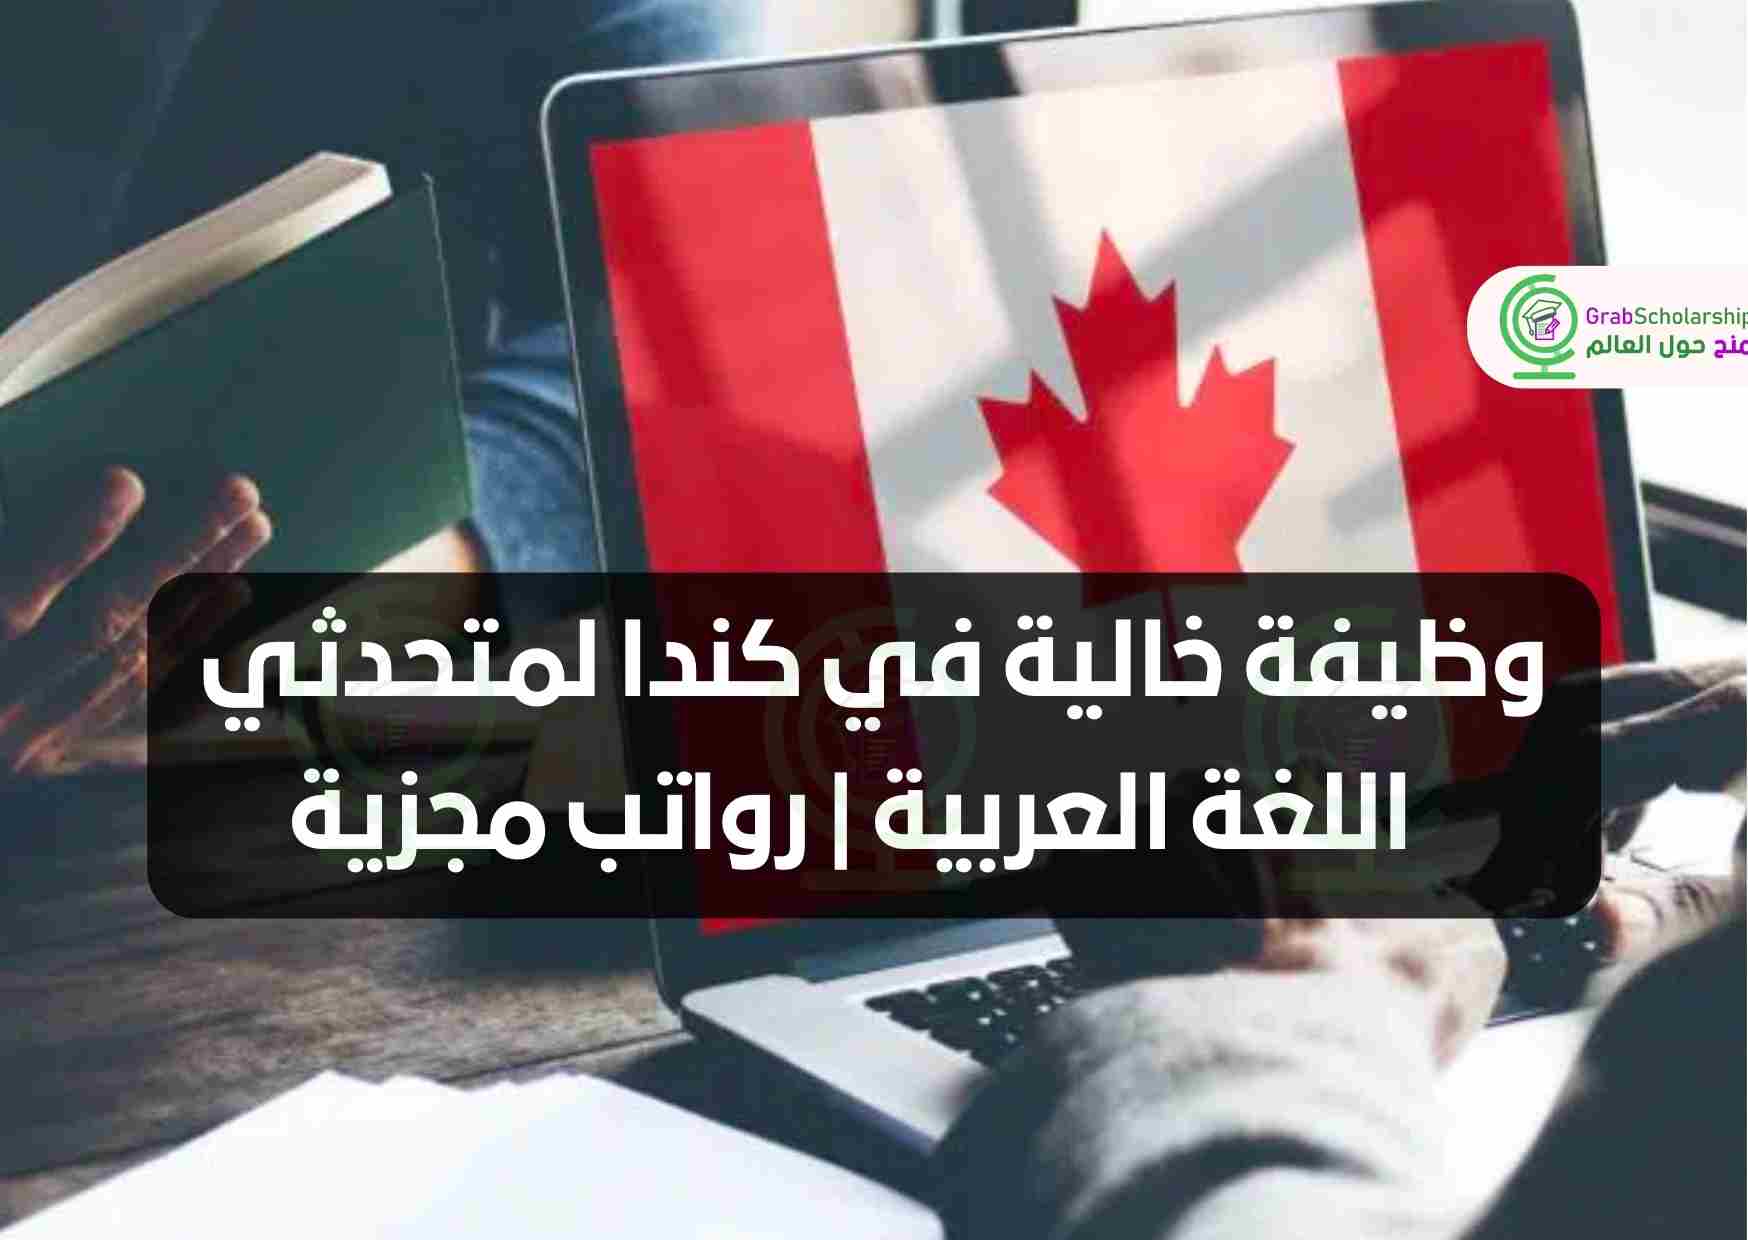 وظيفة خالية في كندا لمتحدثي اللغة العربية | رواتب مجزية